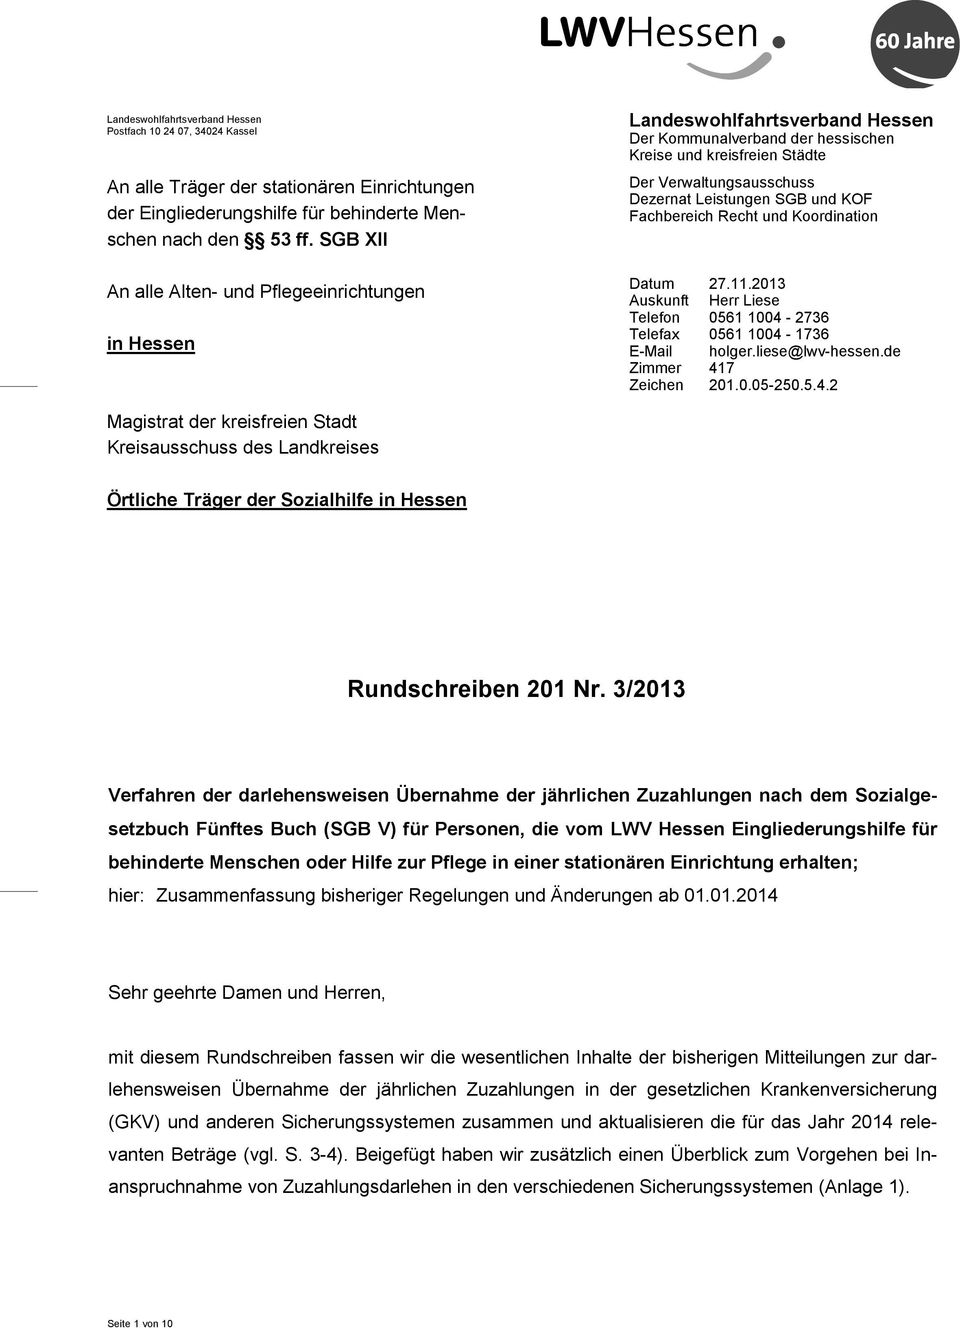 alle Alten- und Pflegeeinrichtungen in Hessen Magistrat der kreisfreien Stadt Kreisausschuss des Landkreises Datum 27.11.